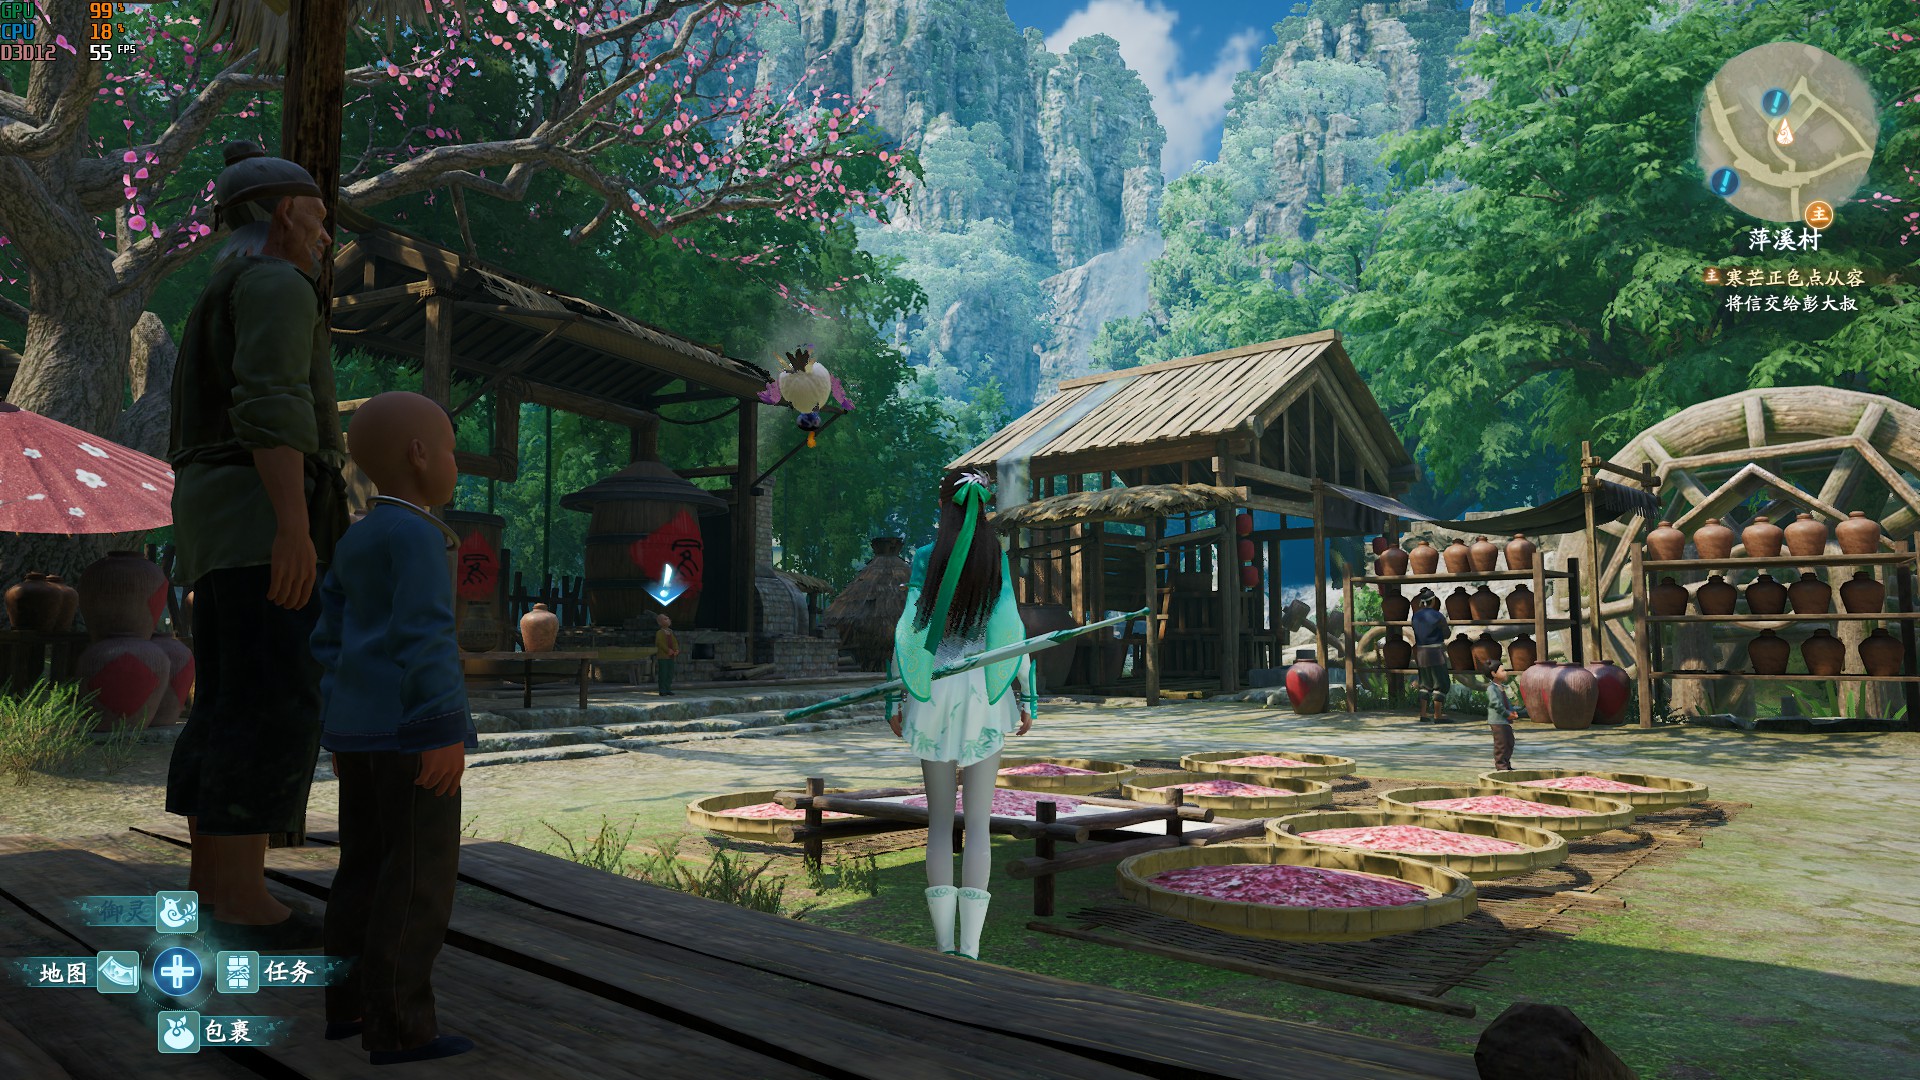 《仙剑奇侠传7》画面各项设置视觉效果对比 - 第17张